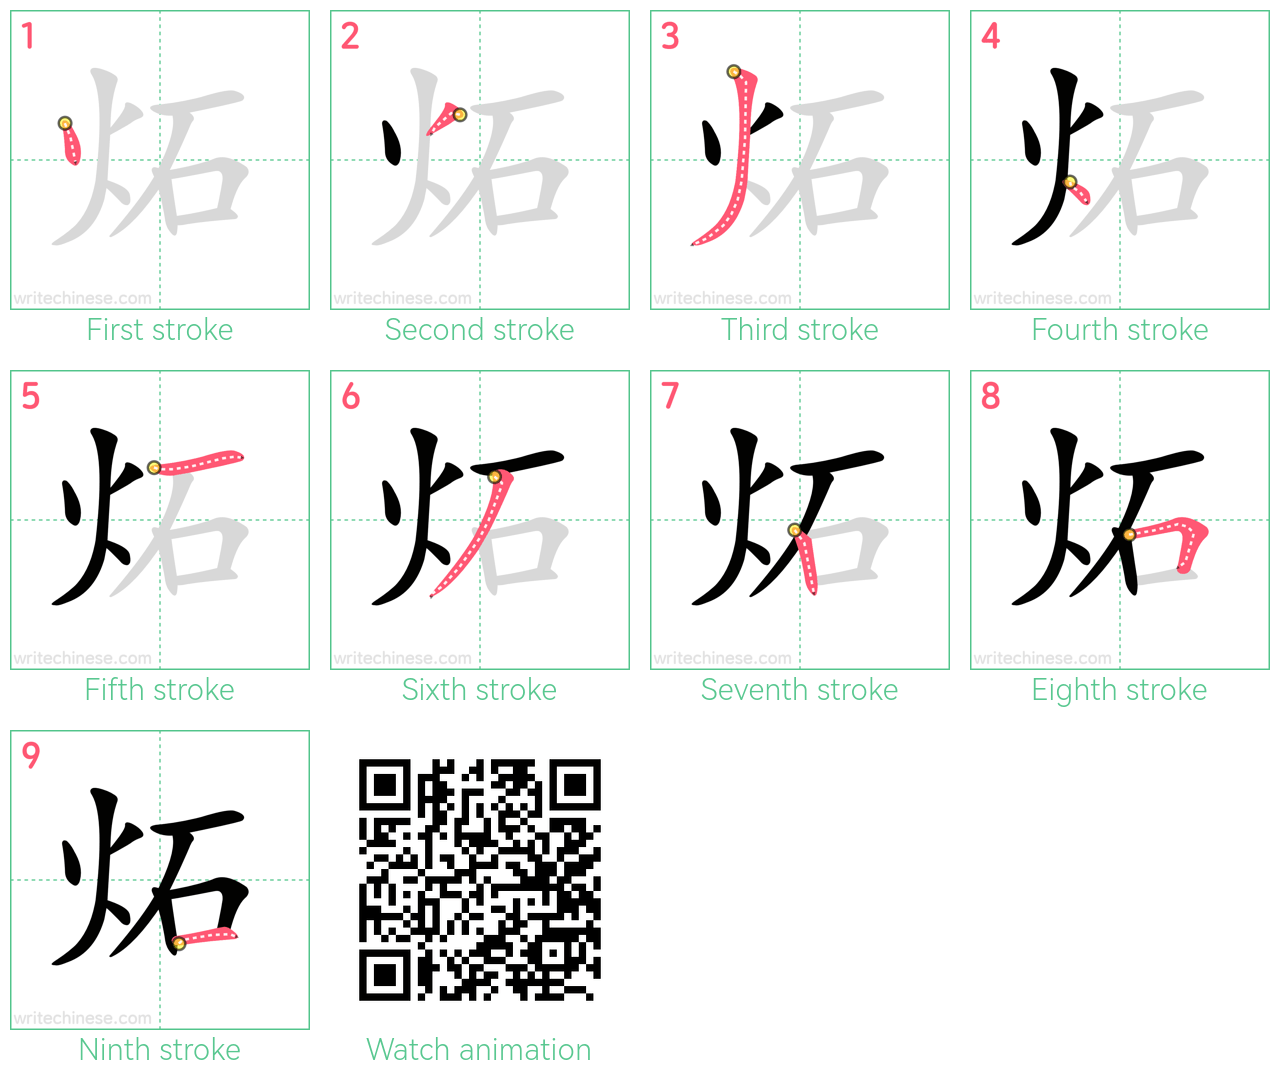 炻 step-by-step stroke order diagrams